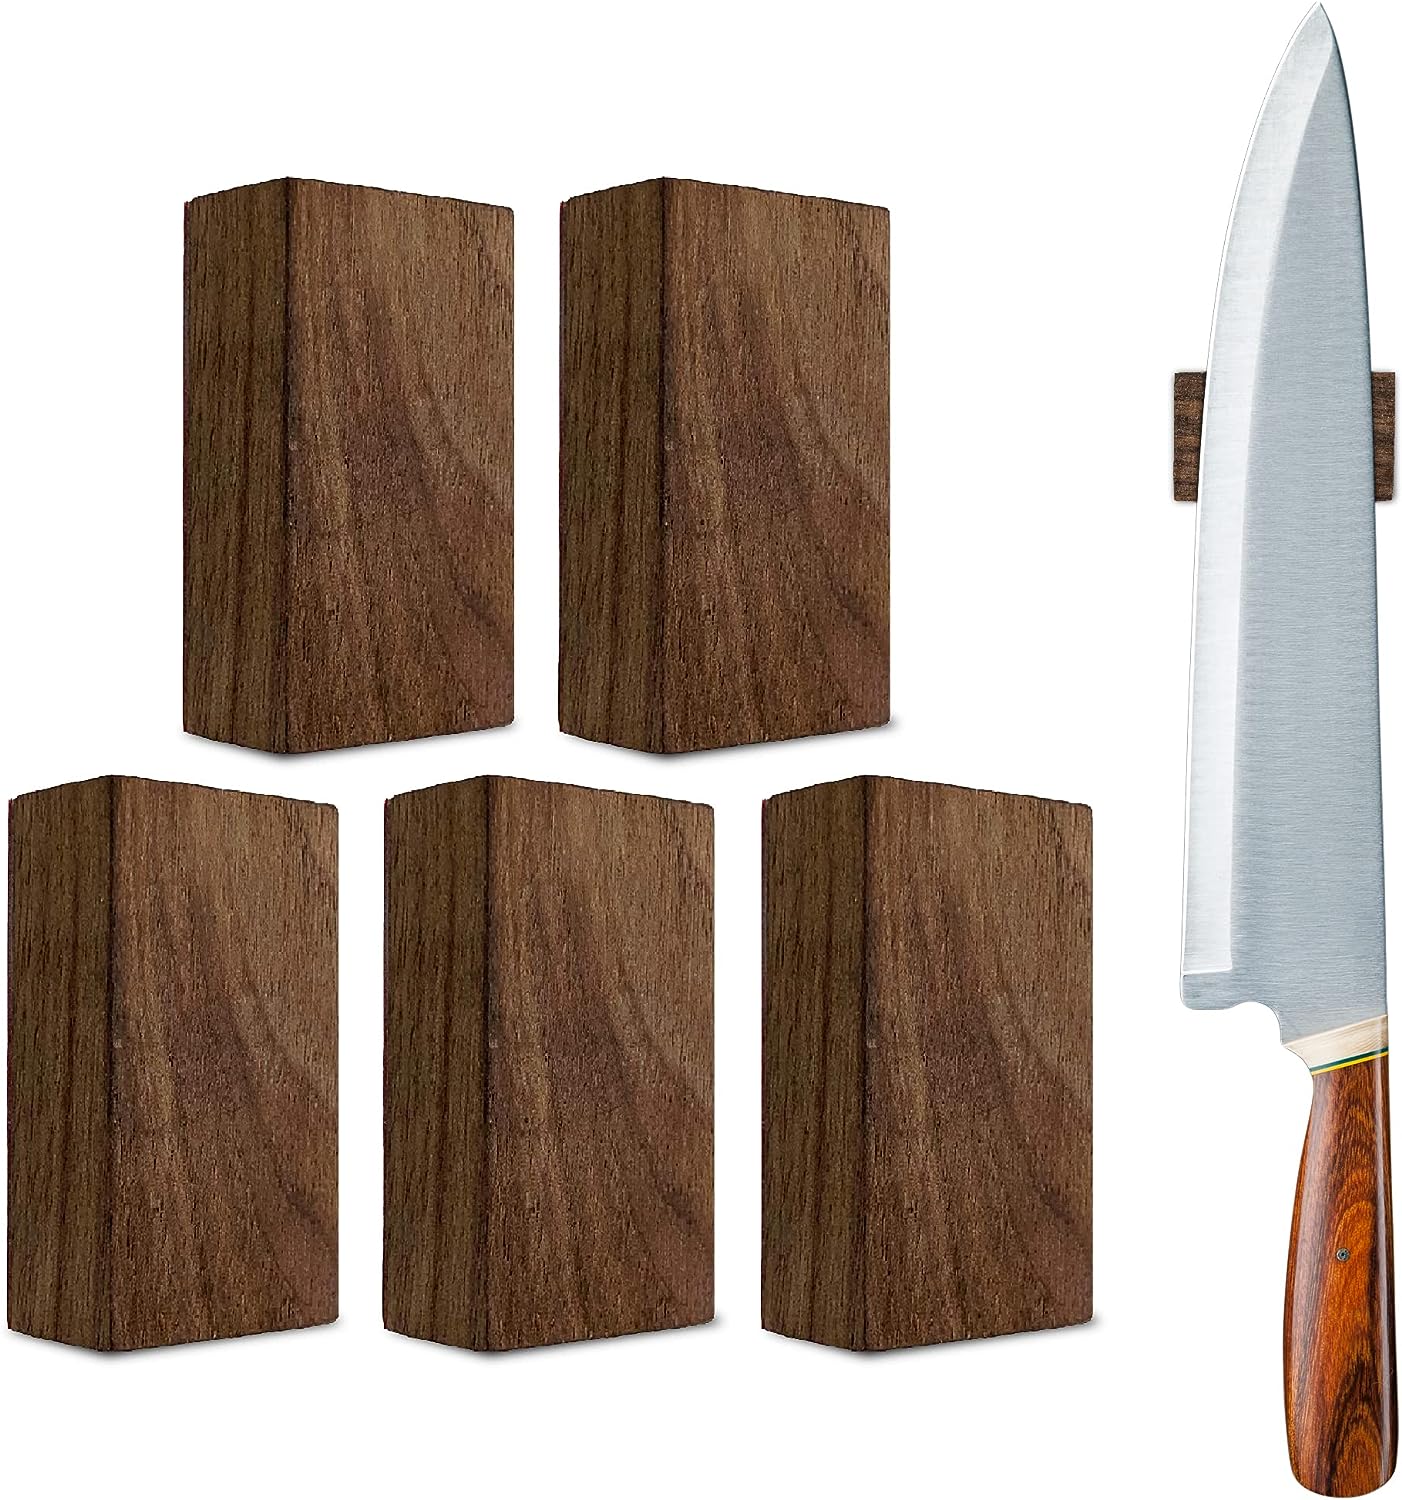 Magnetischer Messerhalter für die Wand – starke Neodym-Magnete und  3M-Klebestreifen (kein Bohren!) 5,1 x 3,1 cm Holz-Walnussblock,  Küchenutensilien